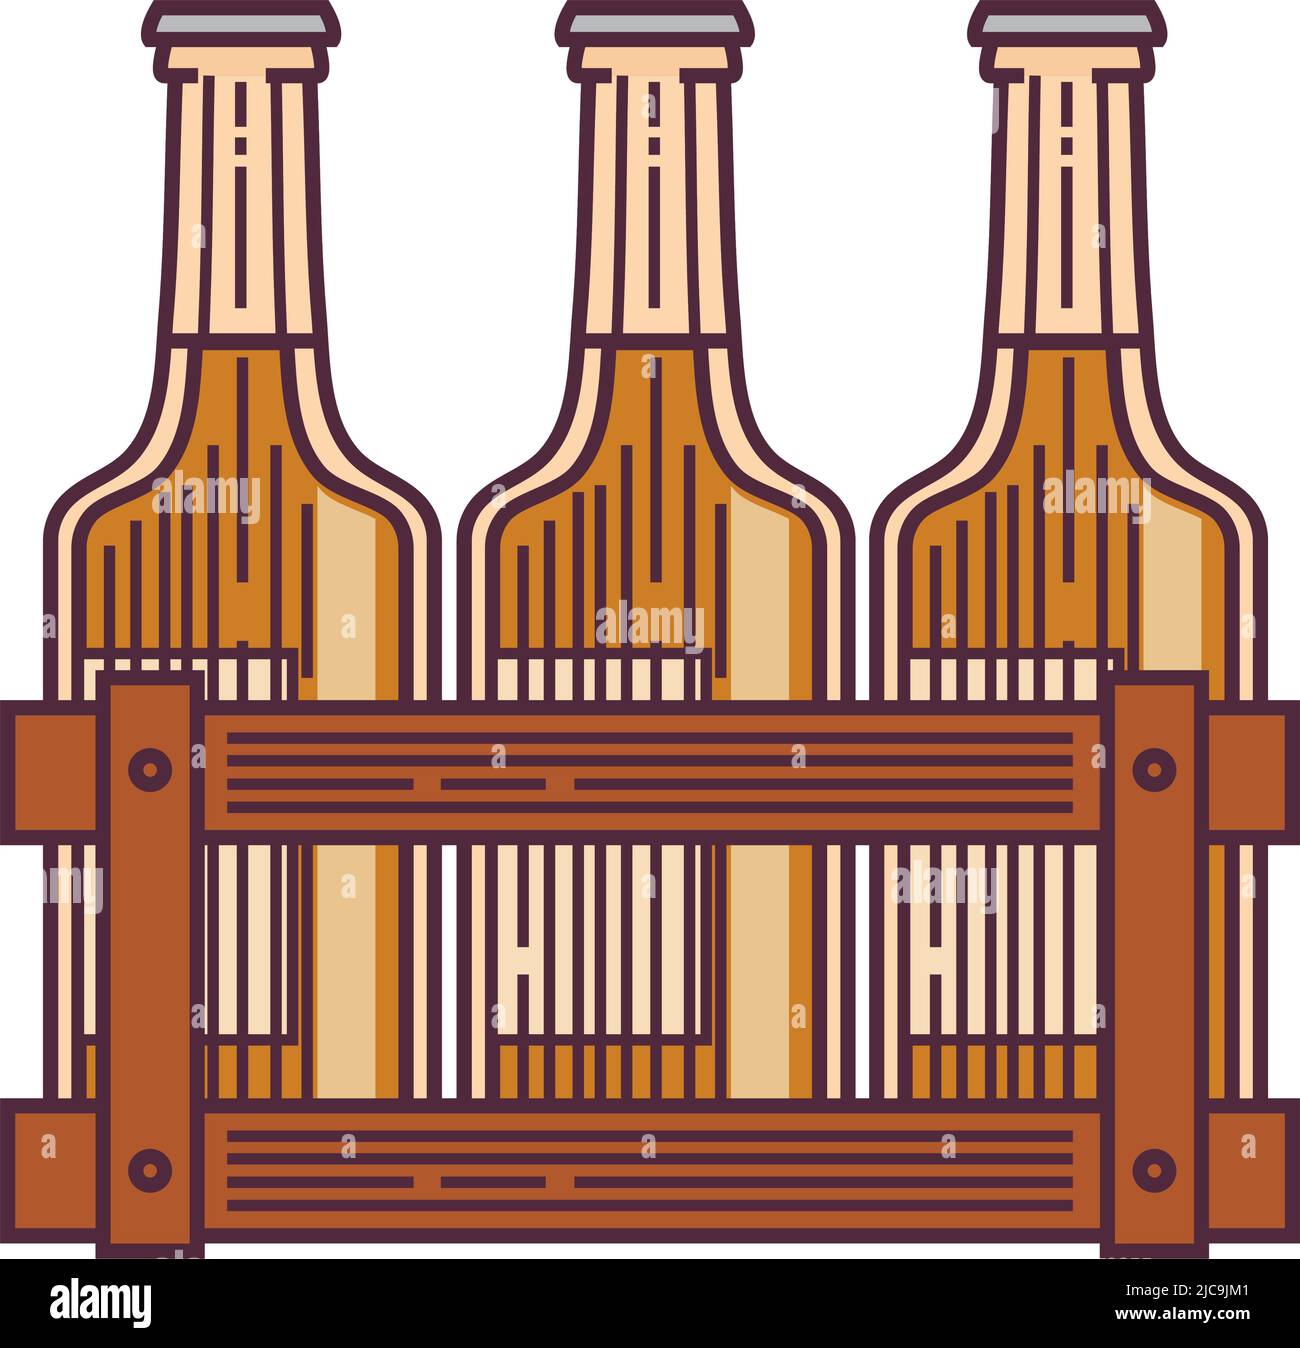 beer bottles in basket Stock Vector